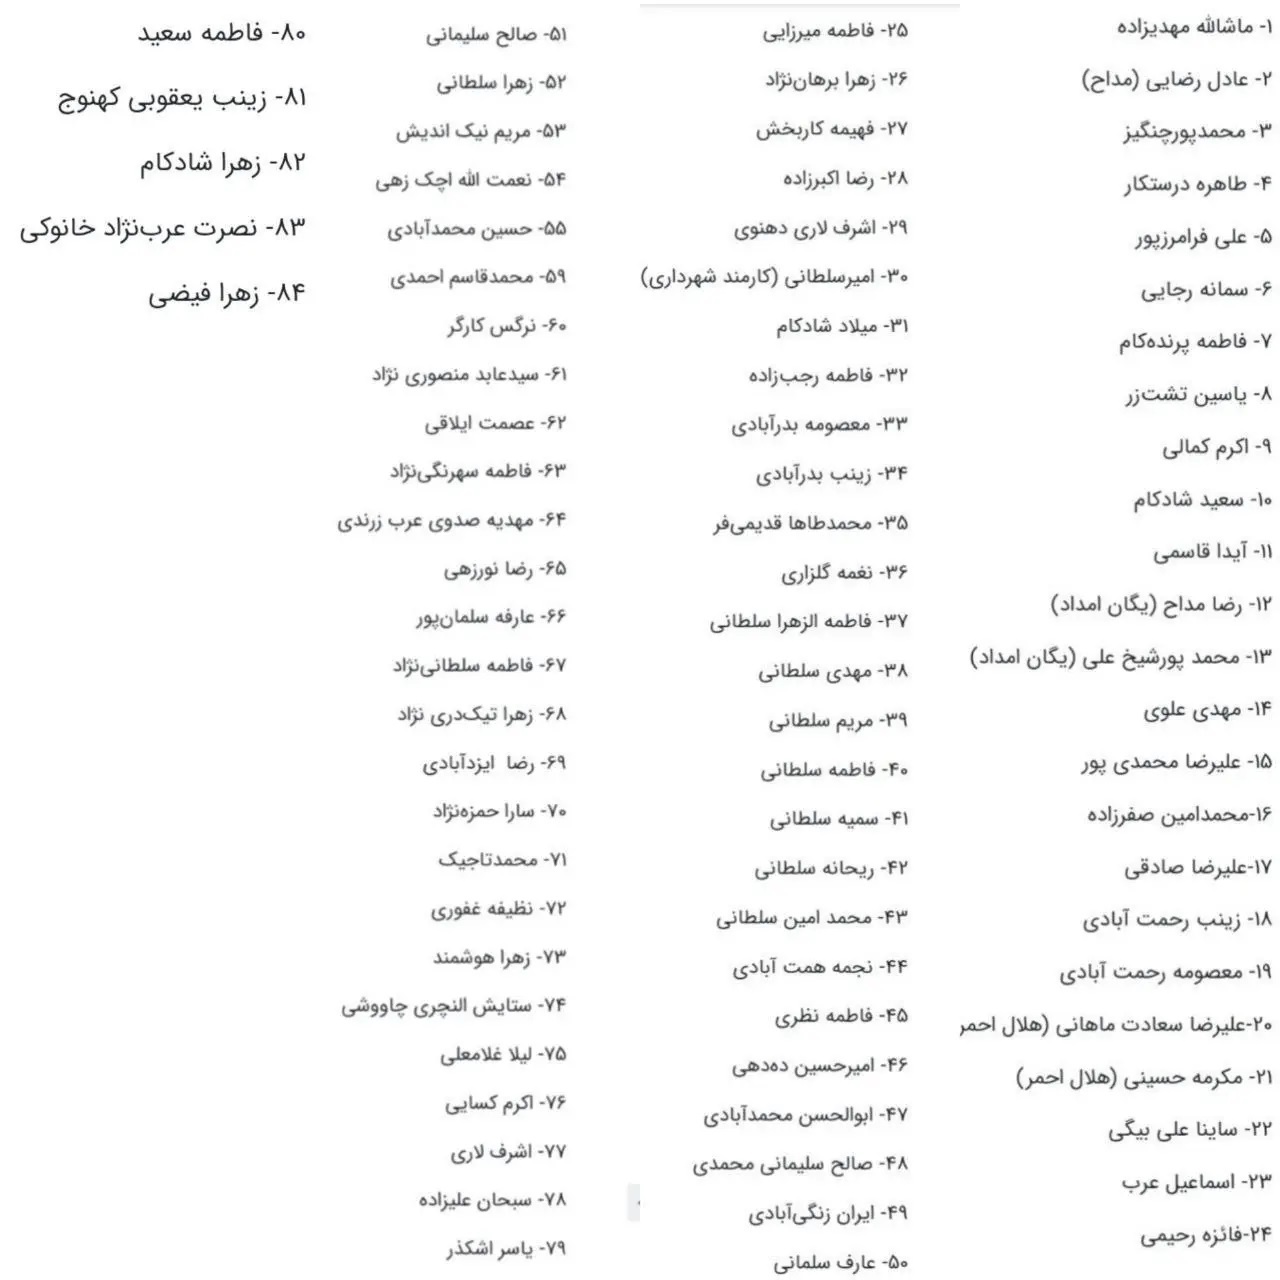 لیست کامل اسامی شهدای حادثه تروریستی کرمان